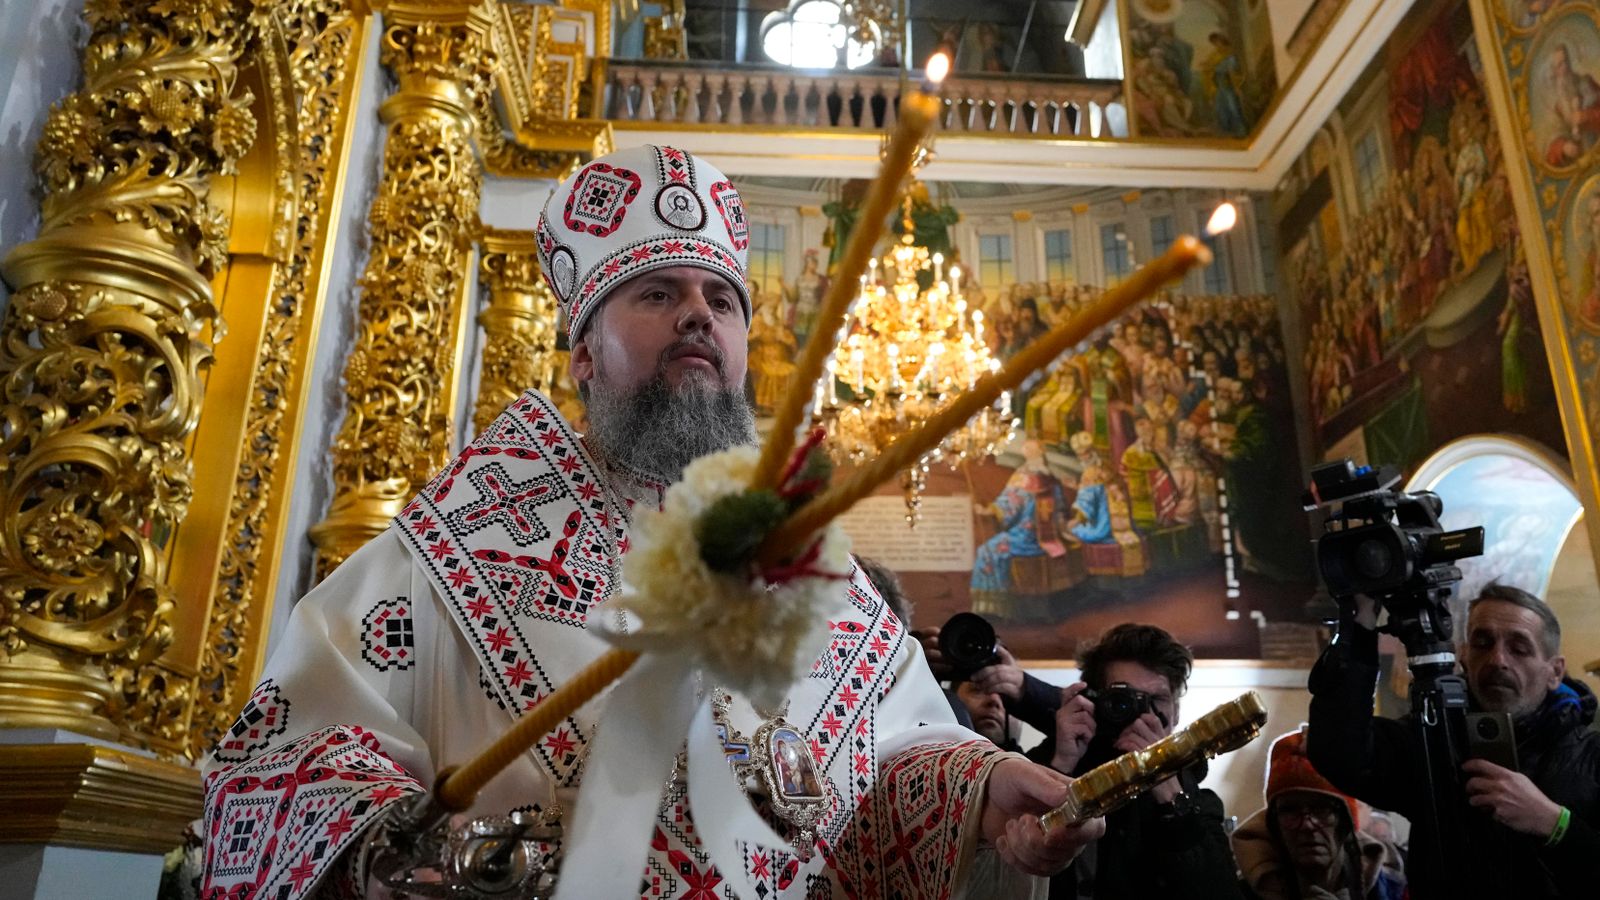 Die Selenskyj-Regierung verstärkt die Verfolgung der mit Russland verbundenen orthodoxen Kirche angesichts zunehmender militärischer Verluste